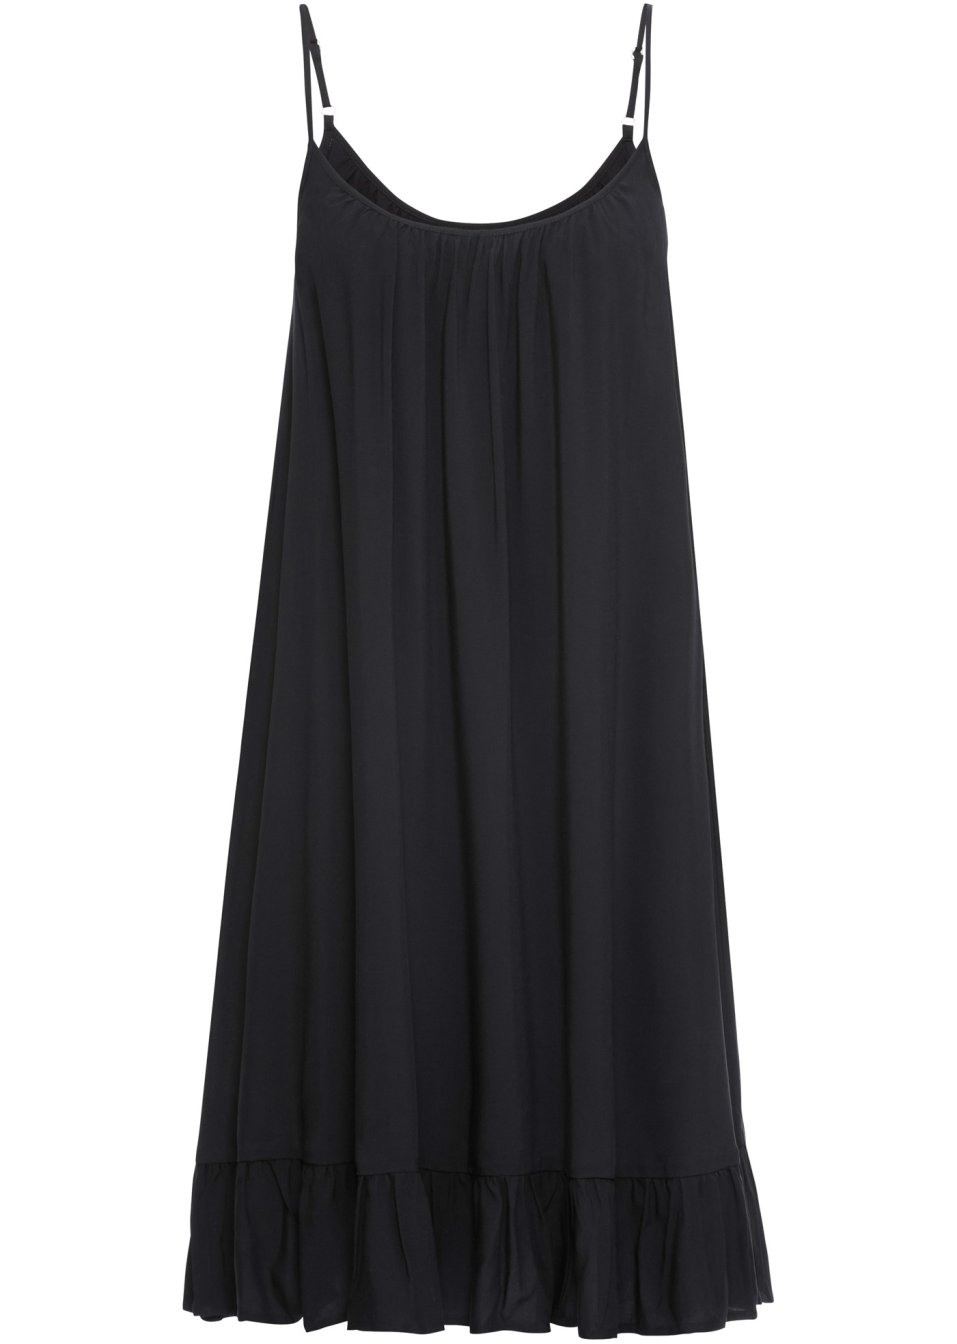 Genial Hängerchen Kleid Schwarz Stylish17 Luxurius Hängerchen Kleid Schwarz Spezialgebiet